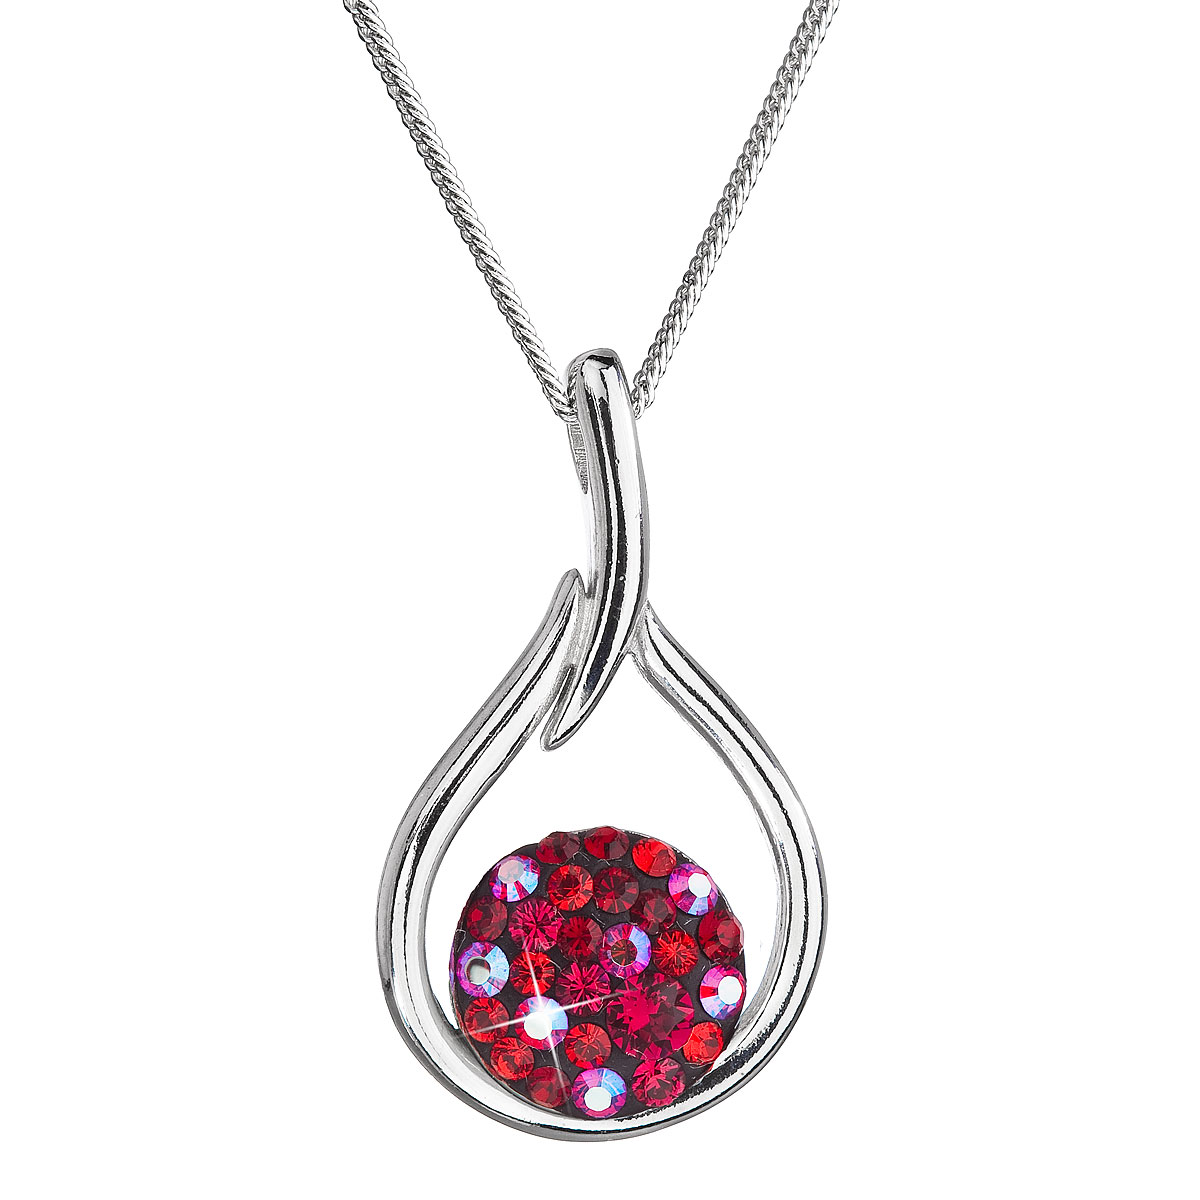 Evolution Group Stříbrný náhrdelník se Swarovski krystaly kapka 32075.3 cherry